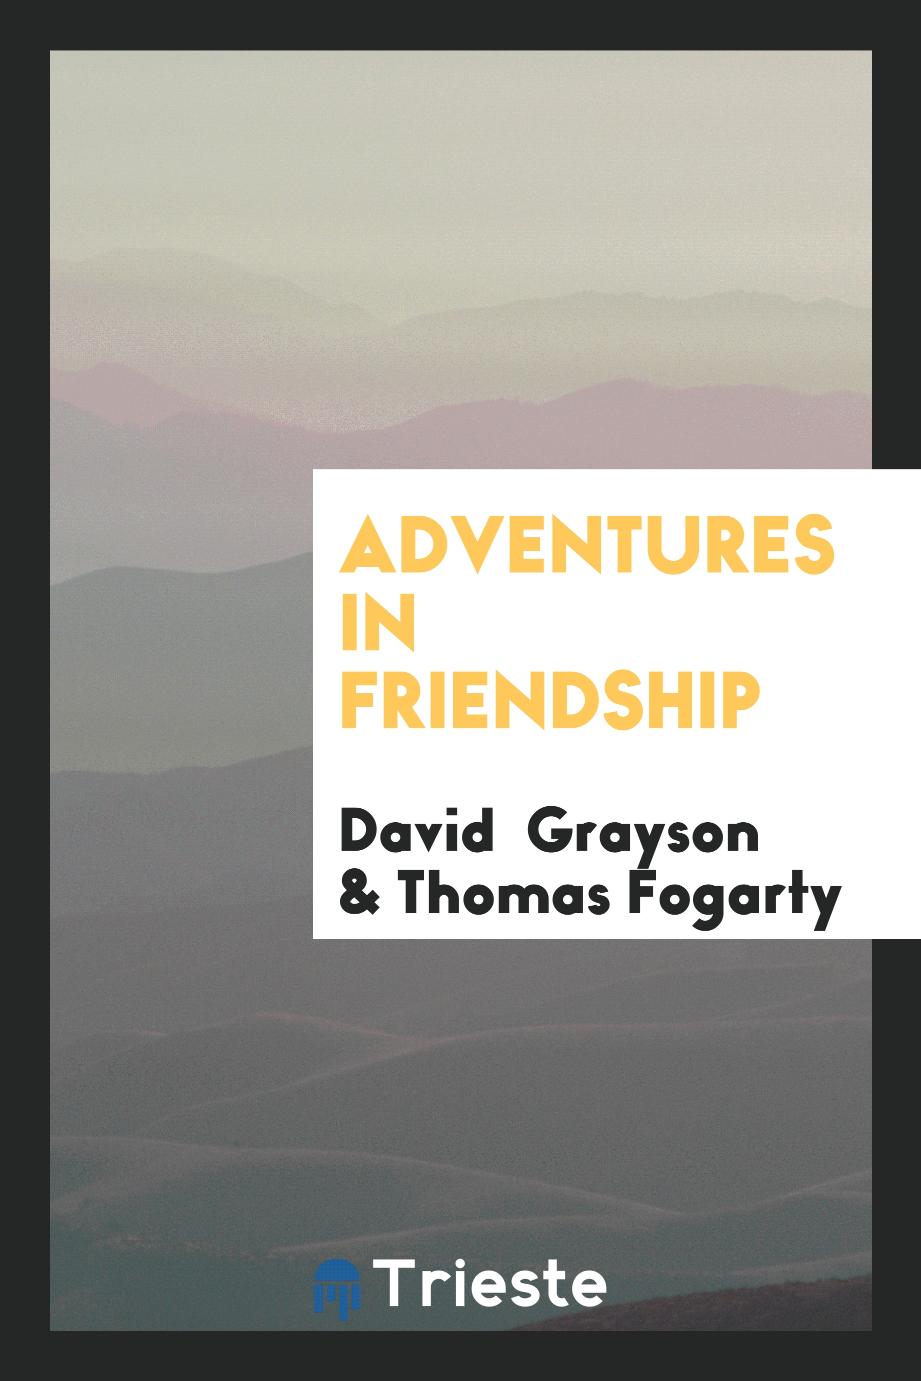 Adventures in friendship